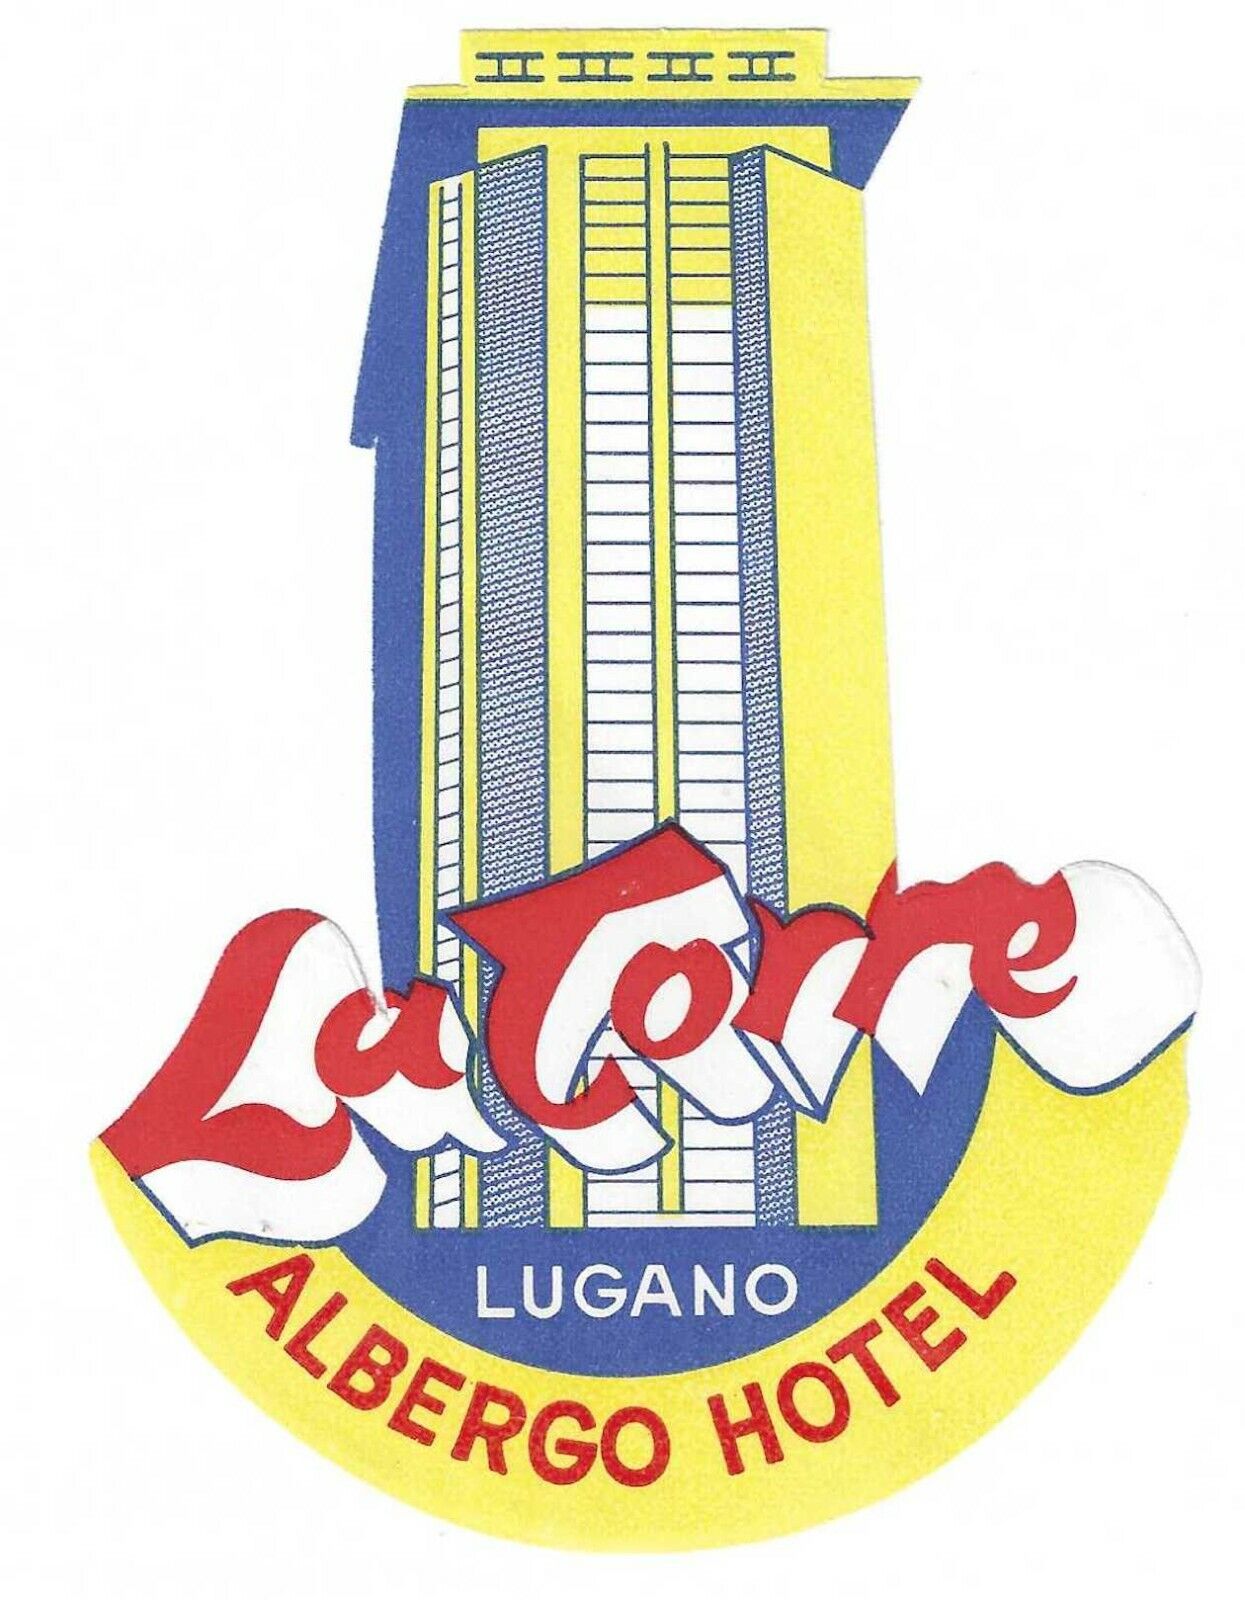 La Torre, Albergo Hotel, Lugano, Switzerland, Hotel Label, Unused